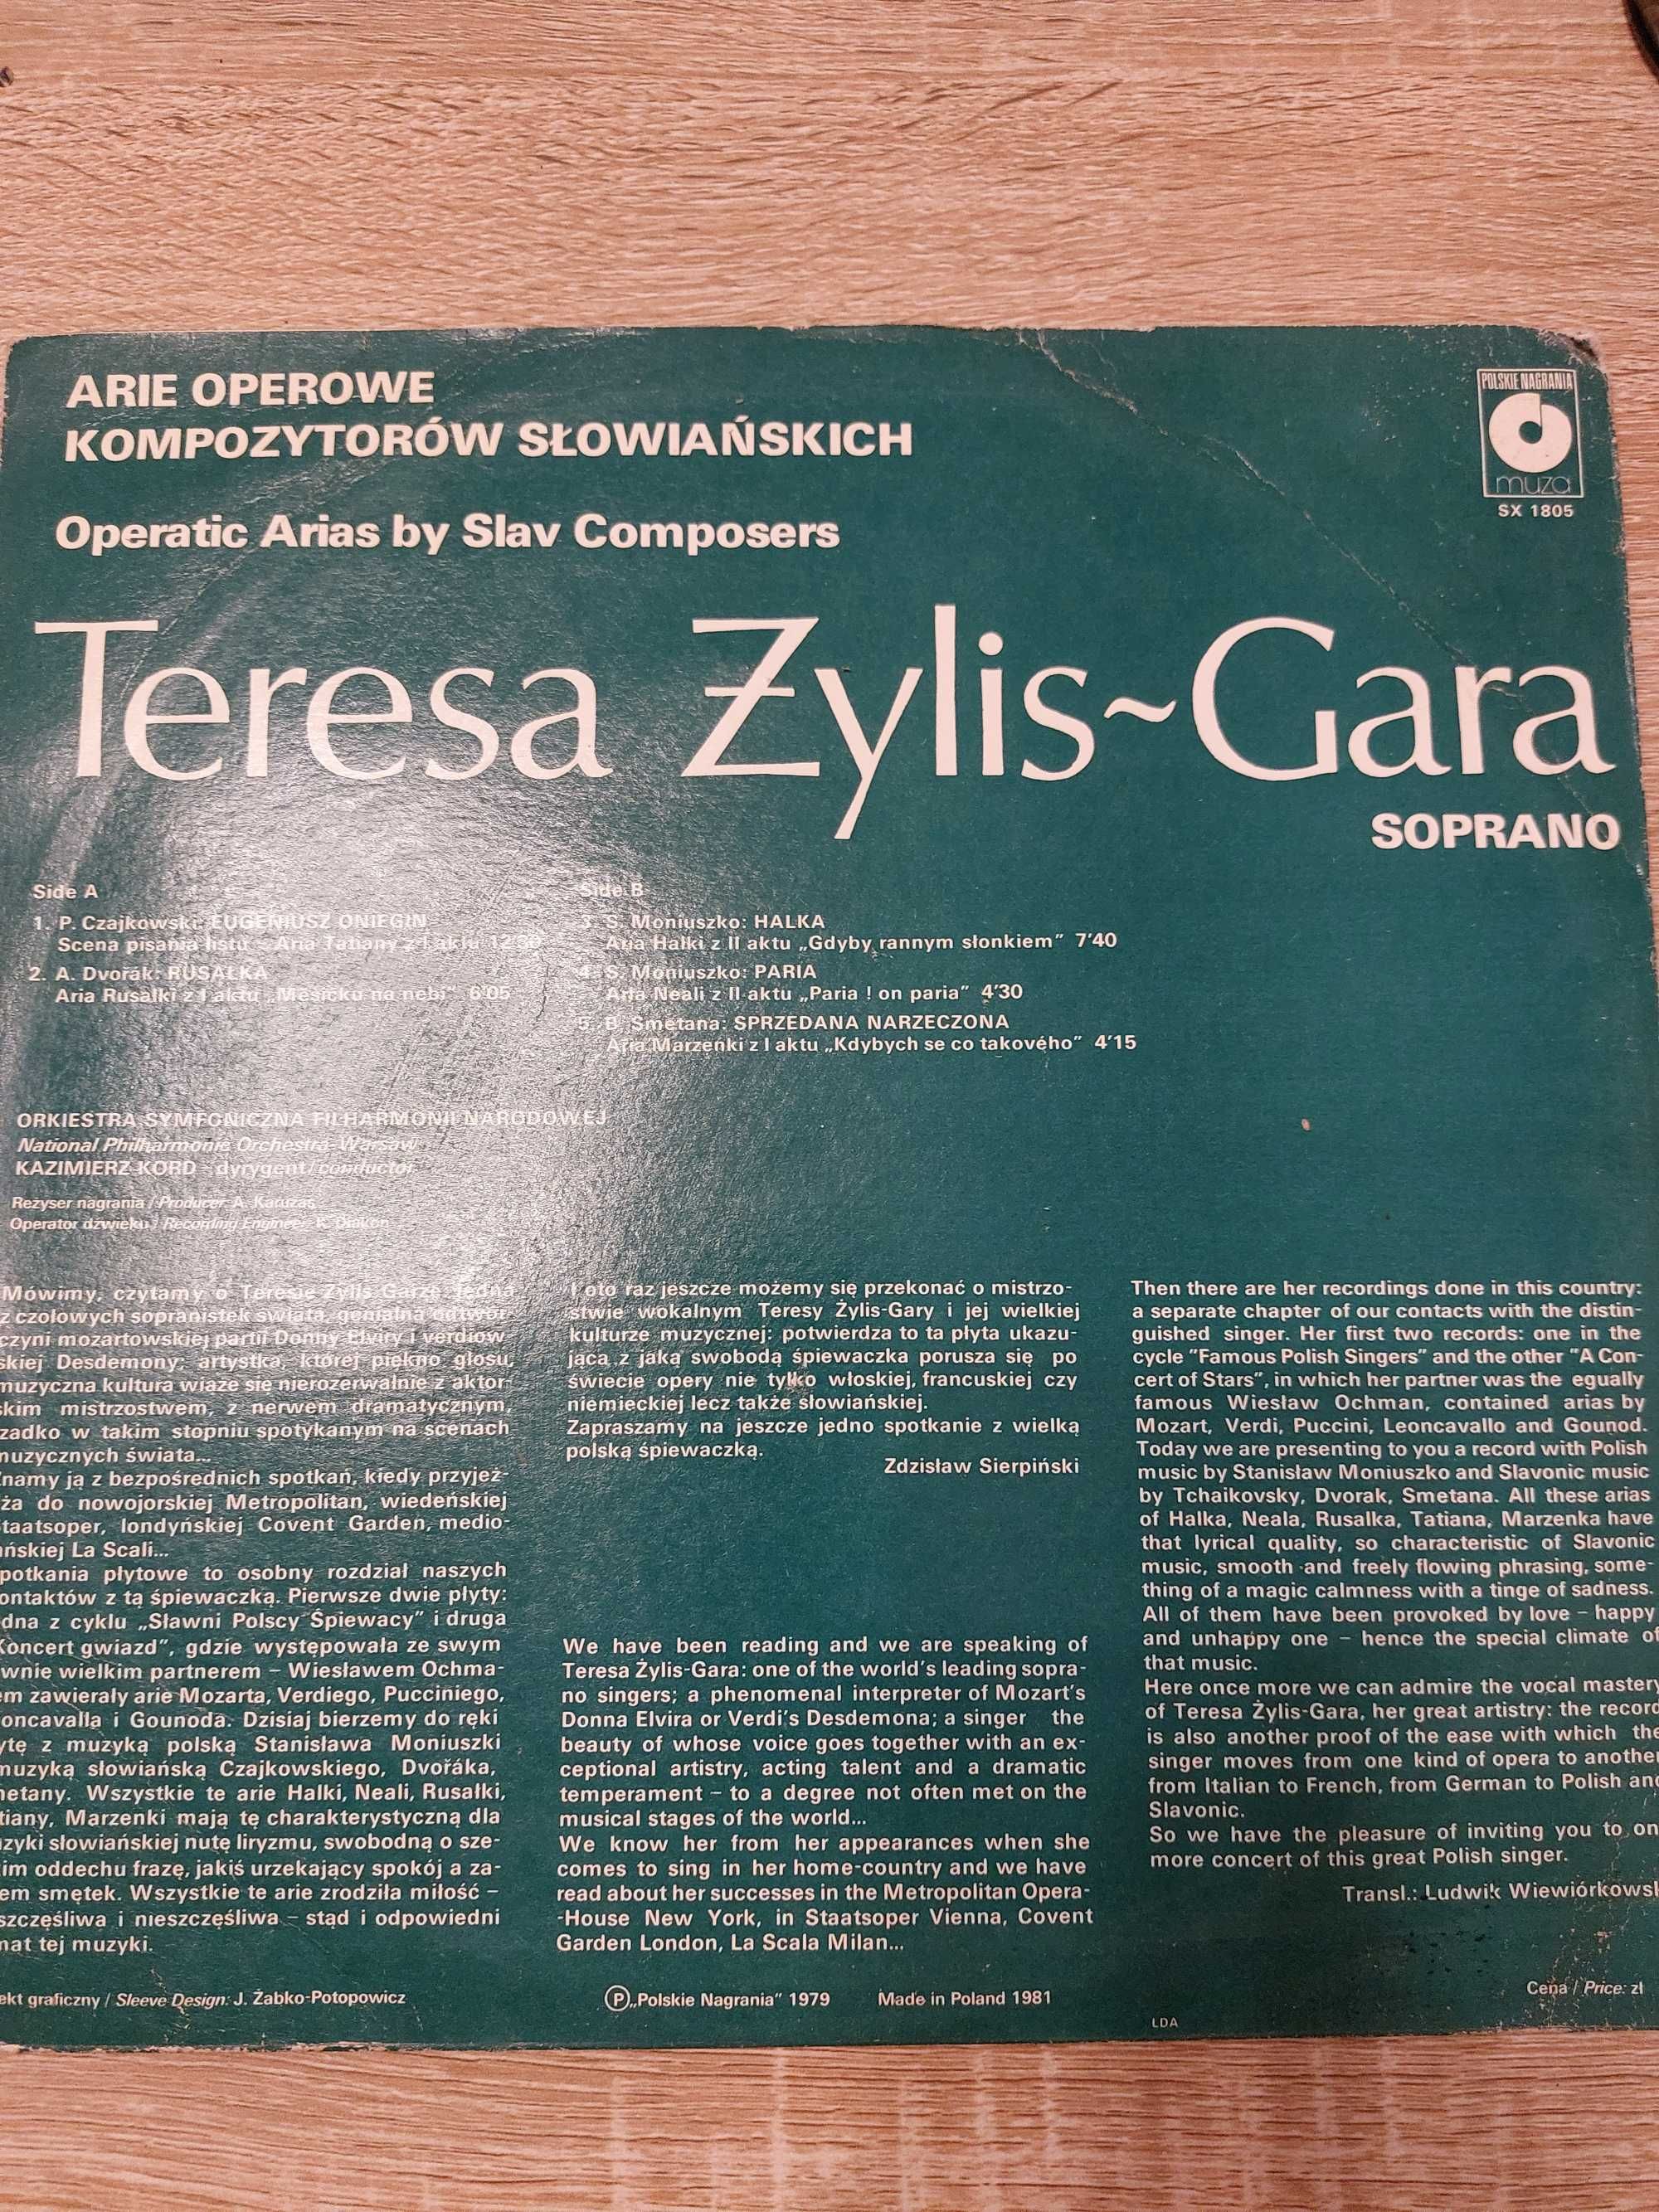 Teresa Żylis-Gara "Arie operowe kompozytorów słowiańskich" - winyl